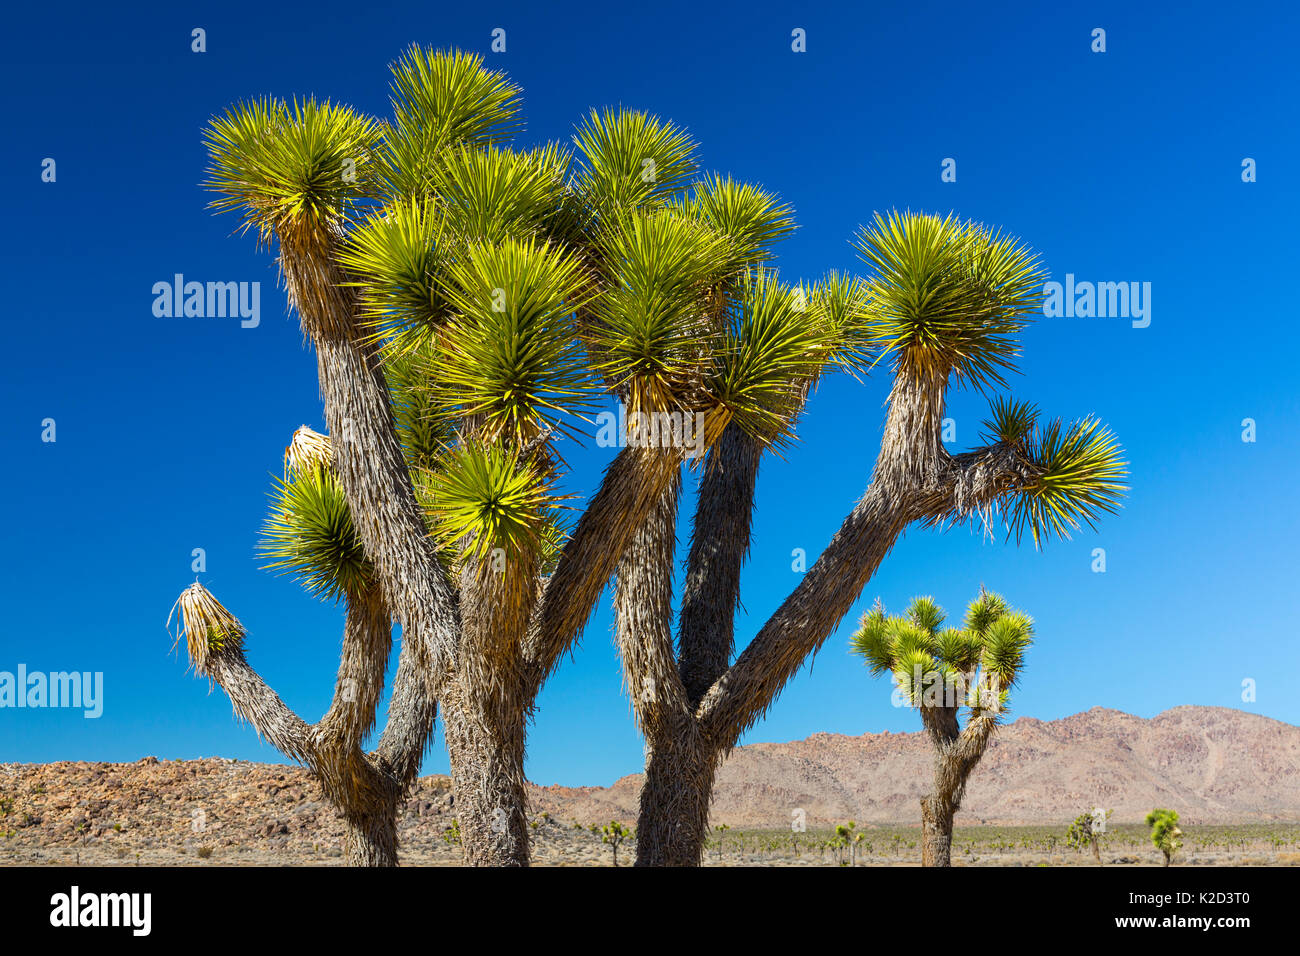 Joshua trees (Yucca brevifolia) Joshua Tree National Park, California, USA, February 2015. Stock Photo